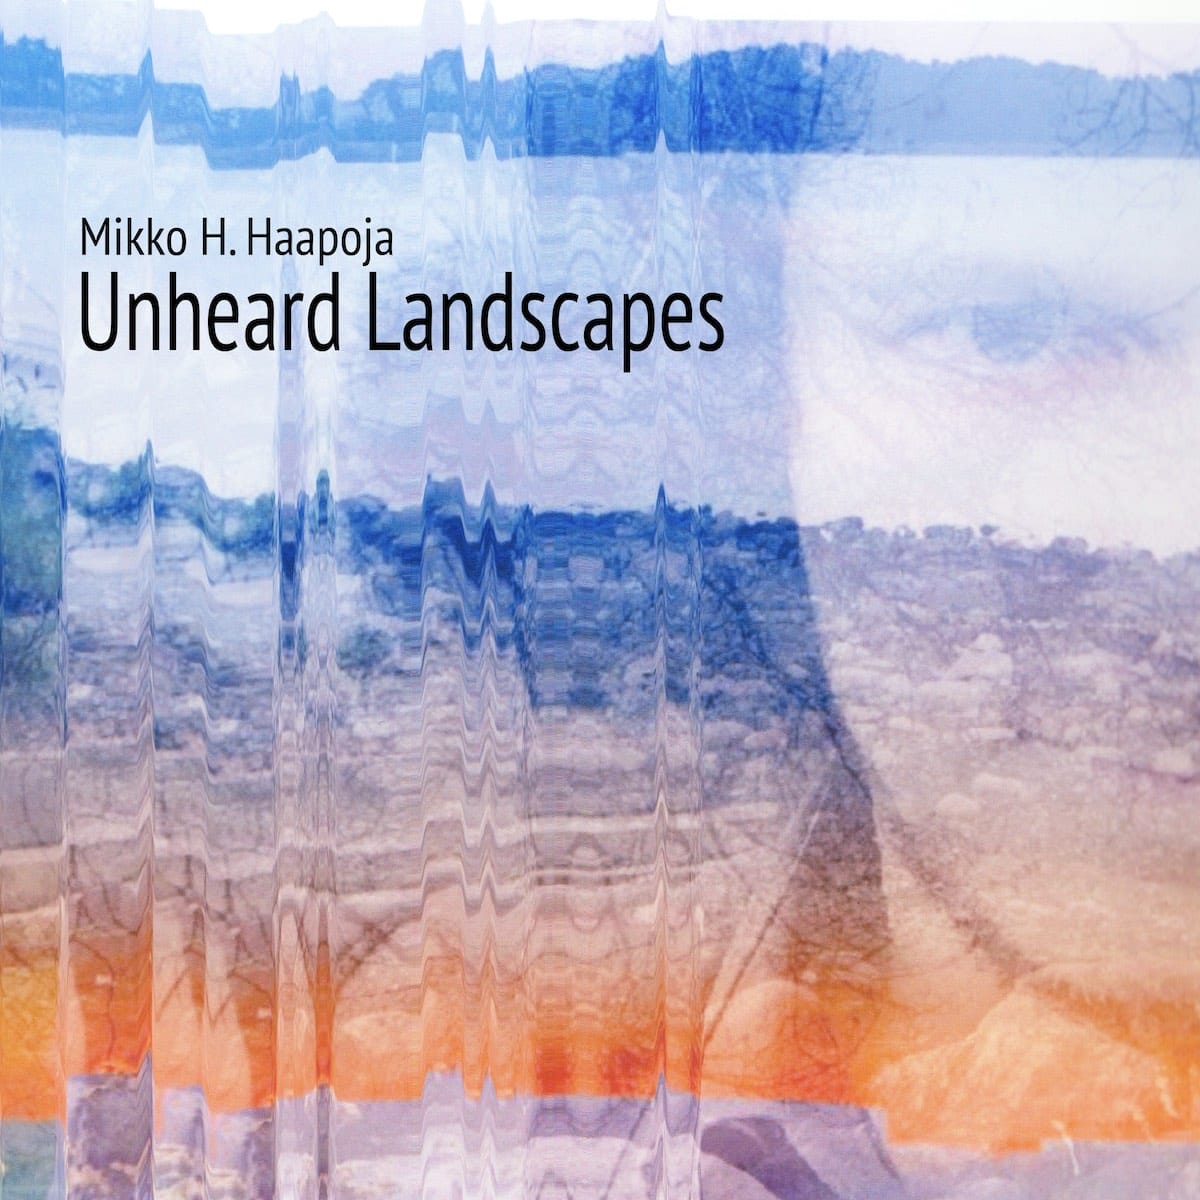 MIKKO H. HAAPOJA: Unheard Landscapes 